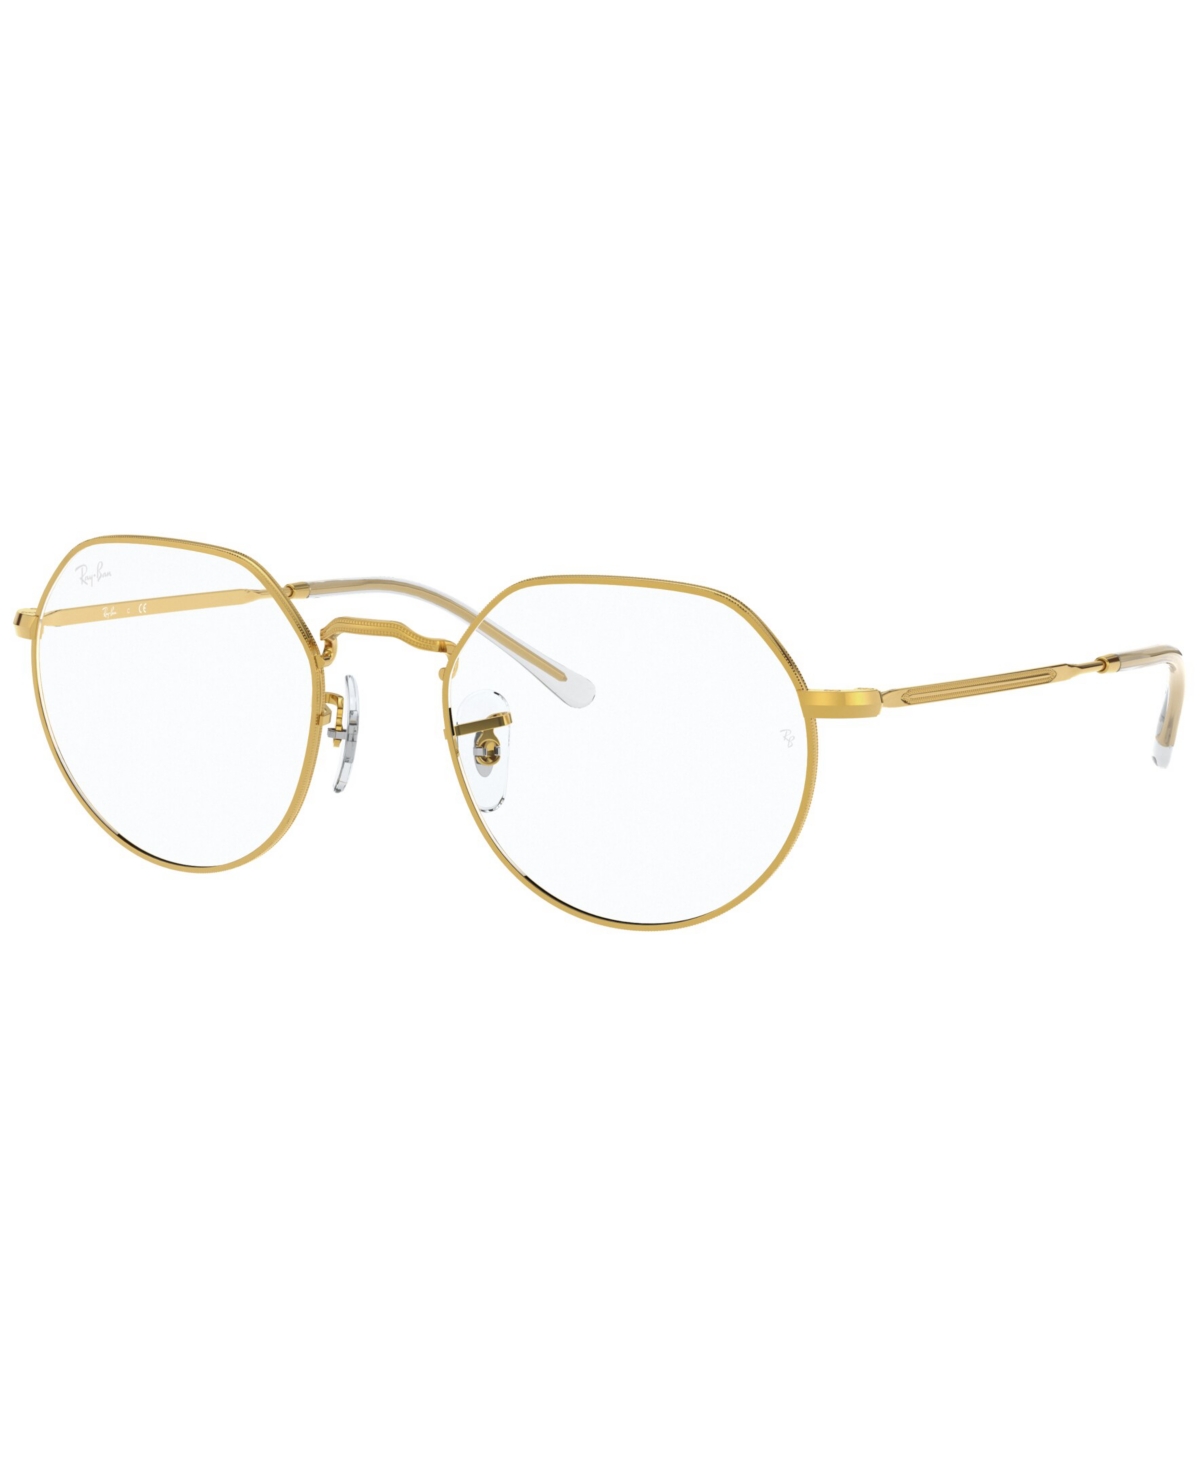 RX6465 Jack Optics Unisex Irregular Eyeglasses - Gold-Tone